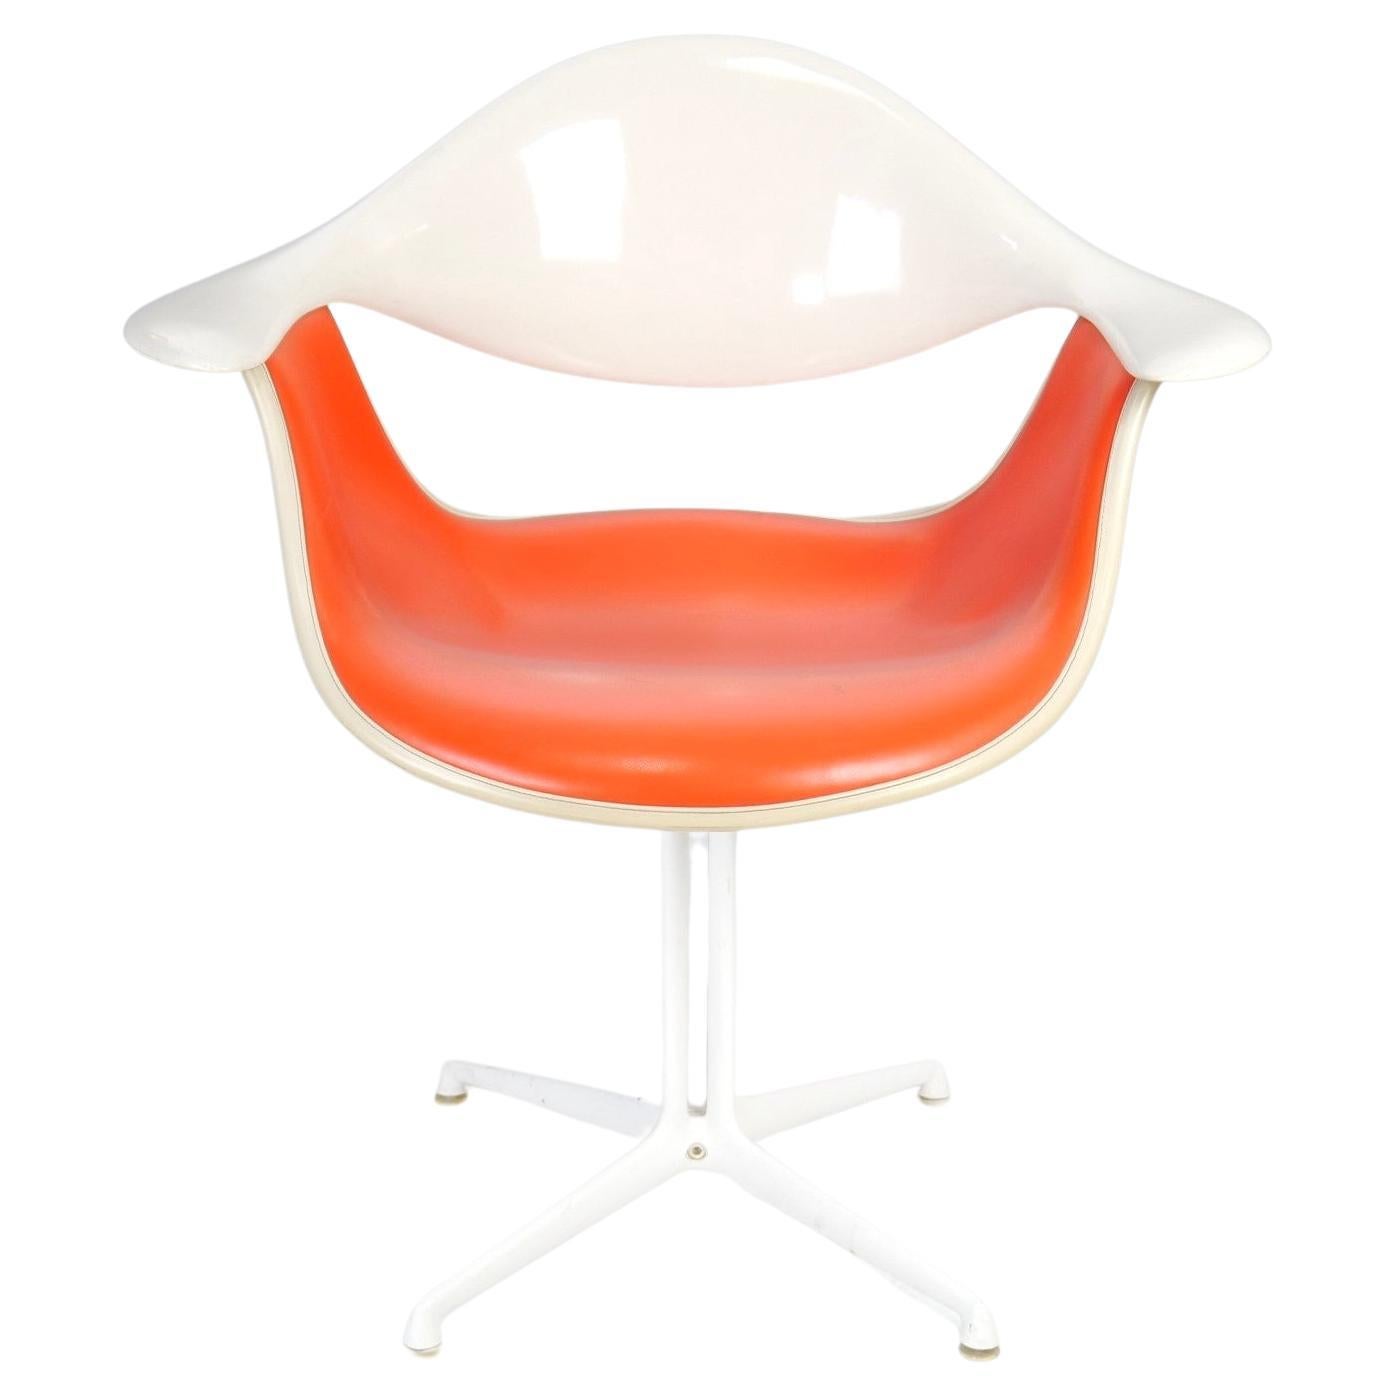 Orangefarbener DAF-Stuhl von George Nelson
mit leichter Patina und Gebrauchsspuren.